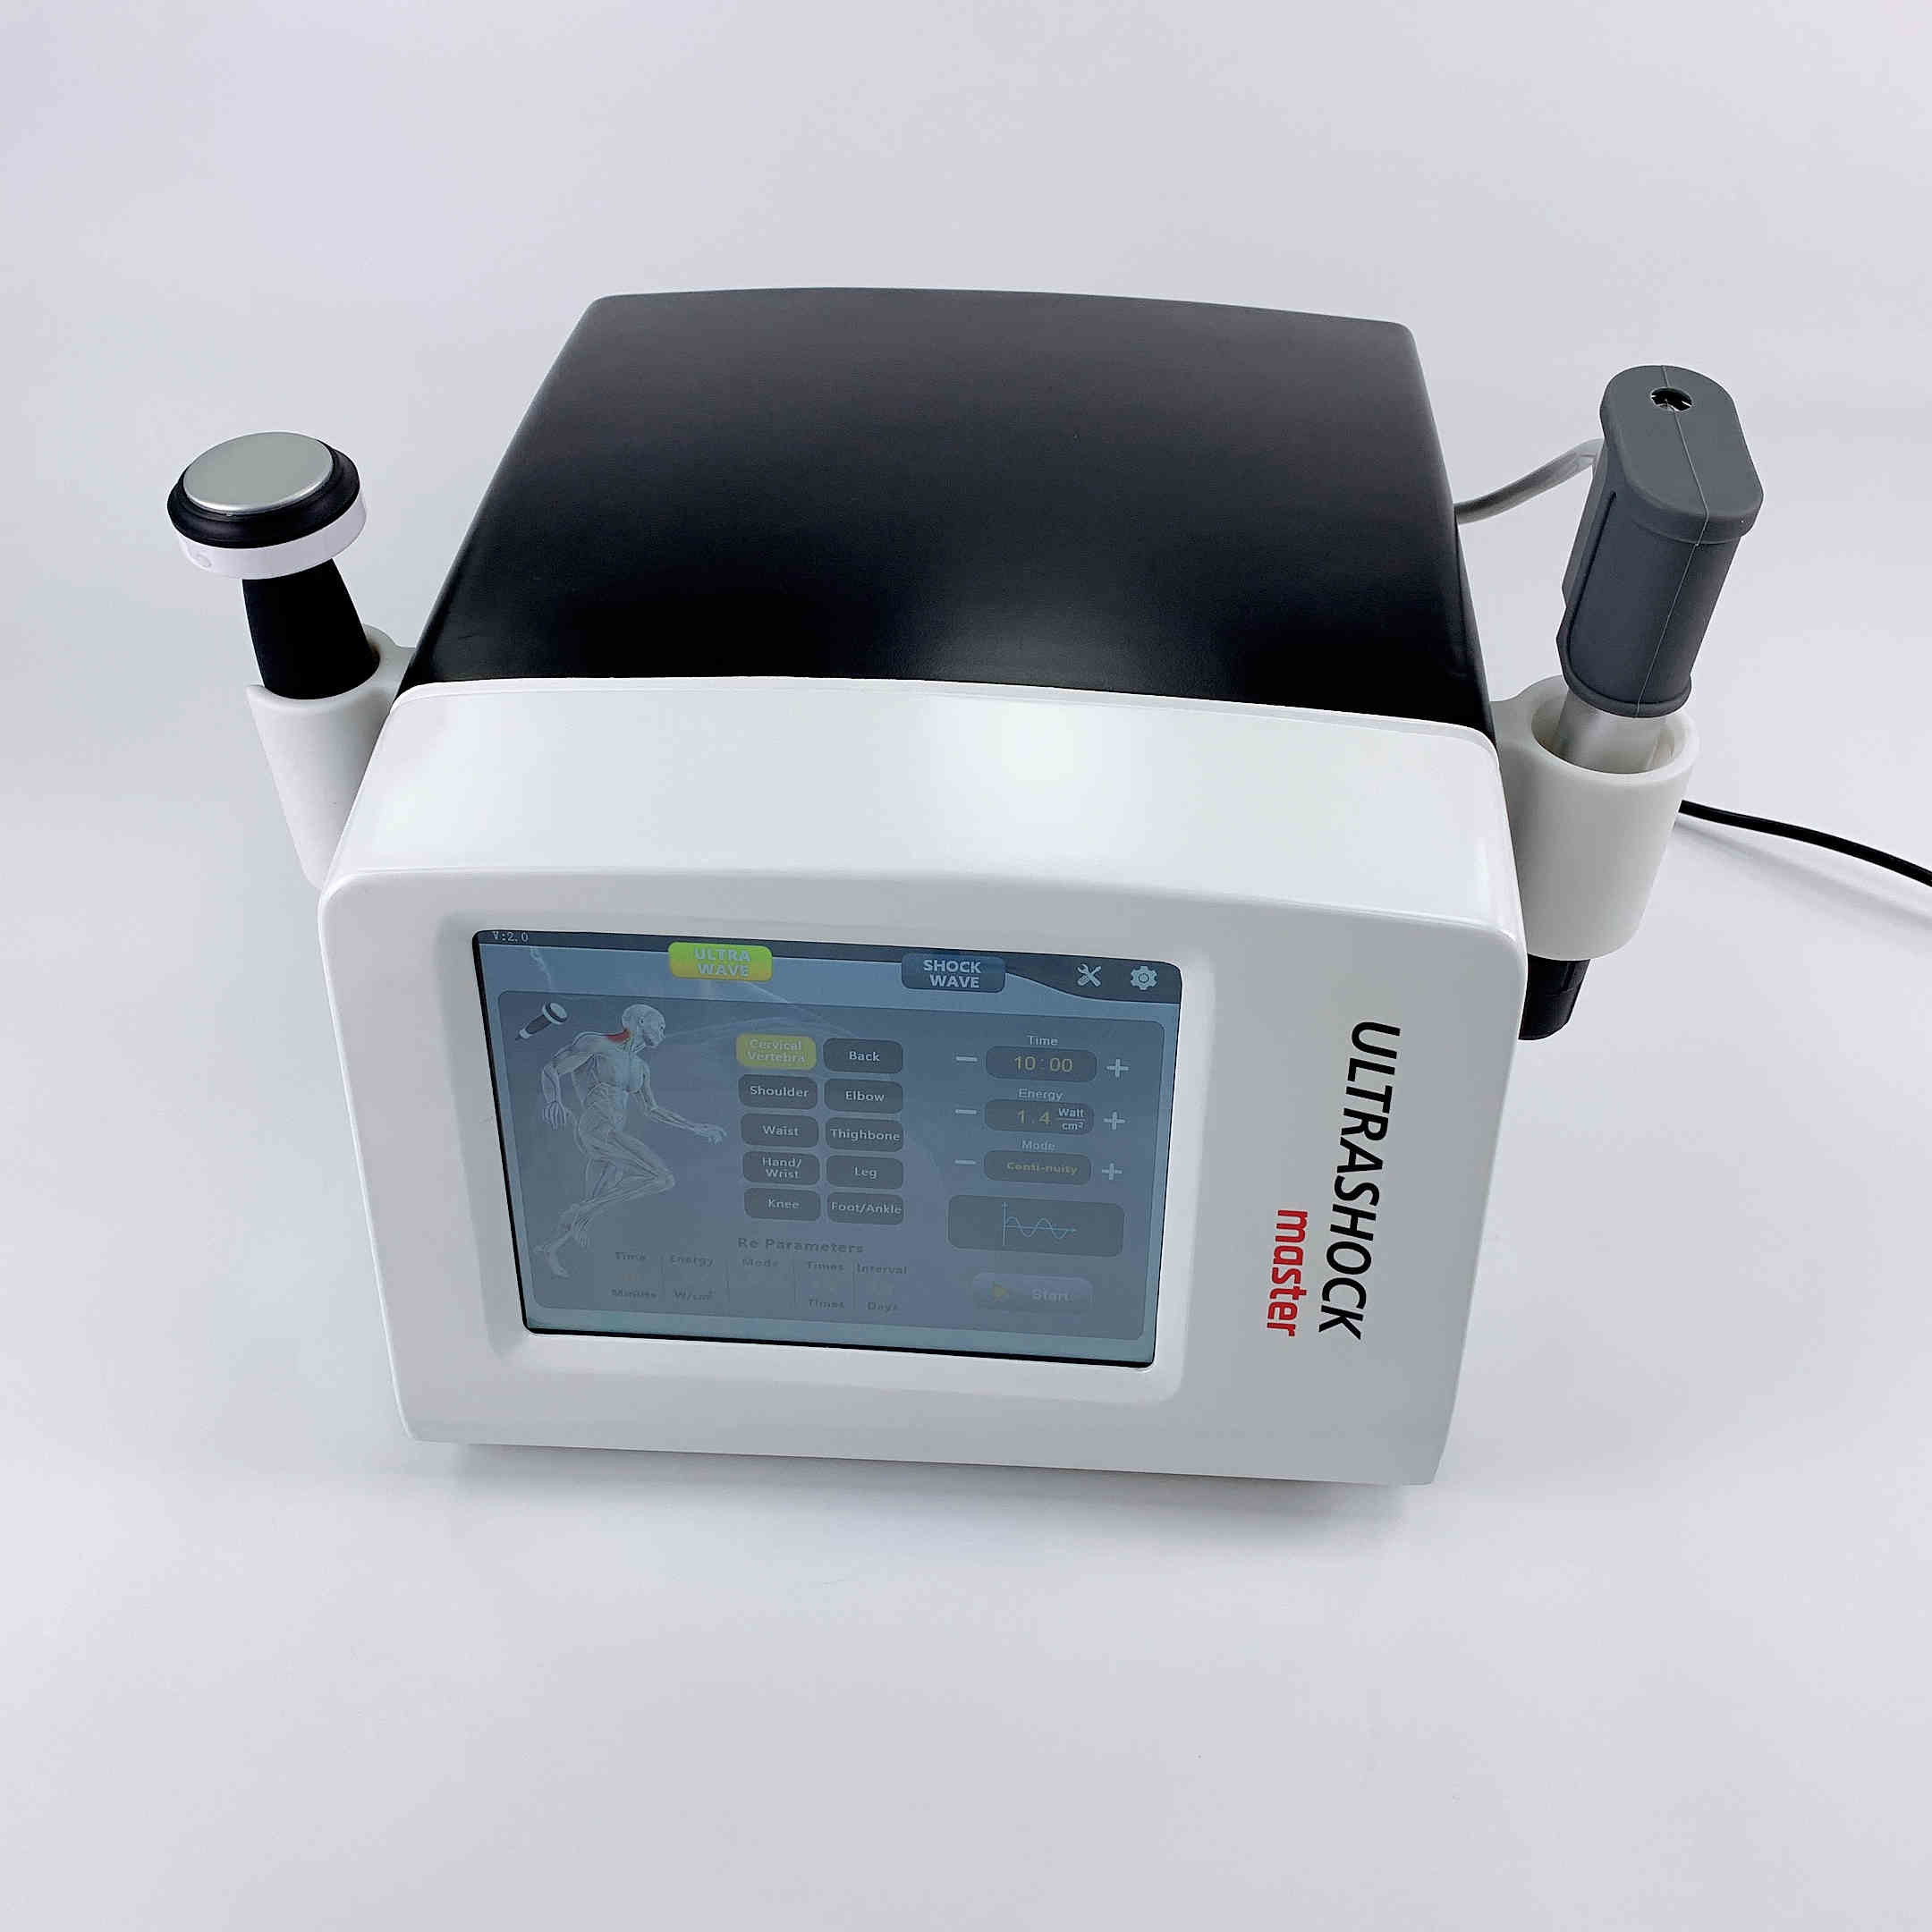 De Machine van de de Ultrasone klanktherapie van 1MHZ Physcial voor de Hulp van de Lichaamspijn